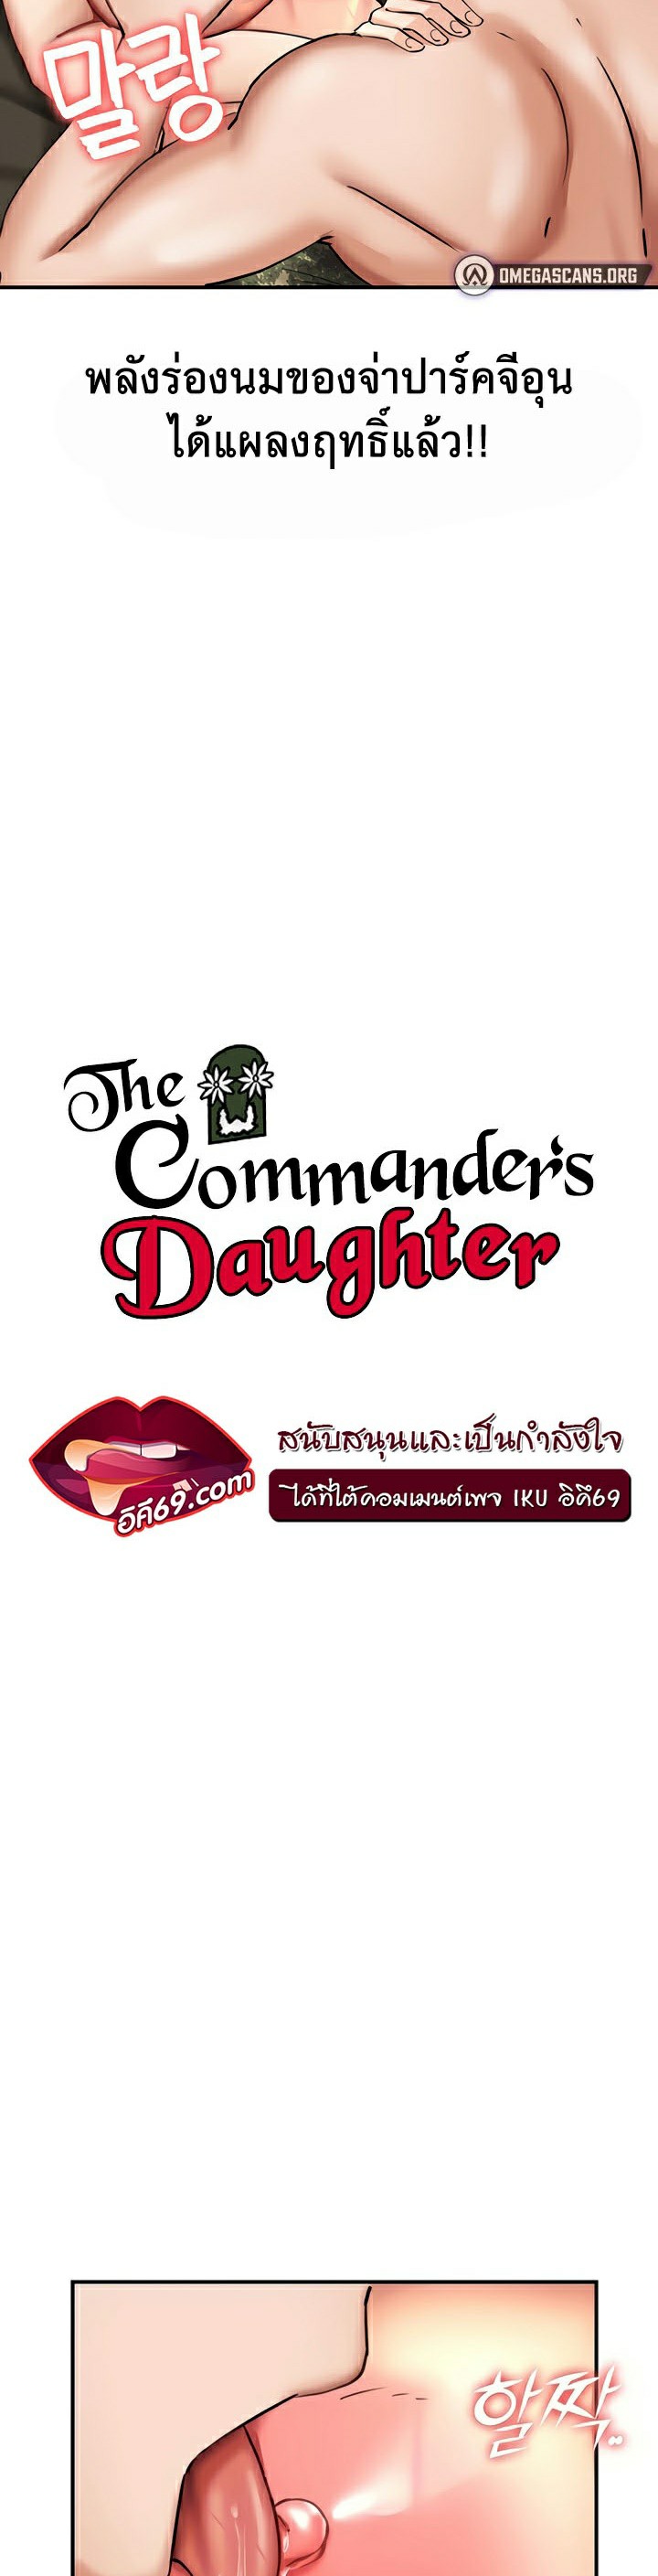 อ่านโดจิน เรื่อง The Commander’s Daughter 27 03